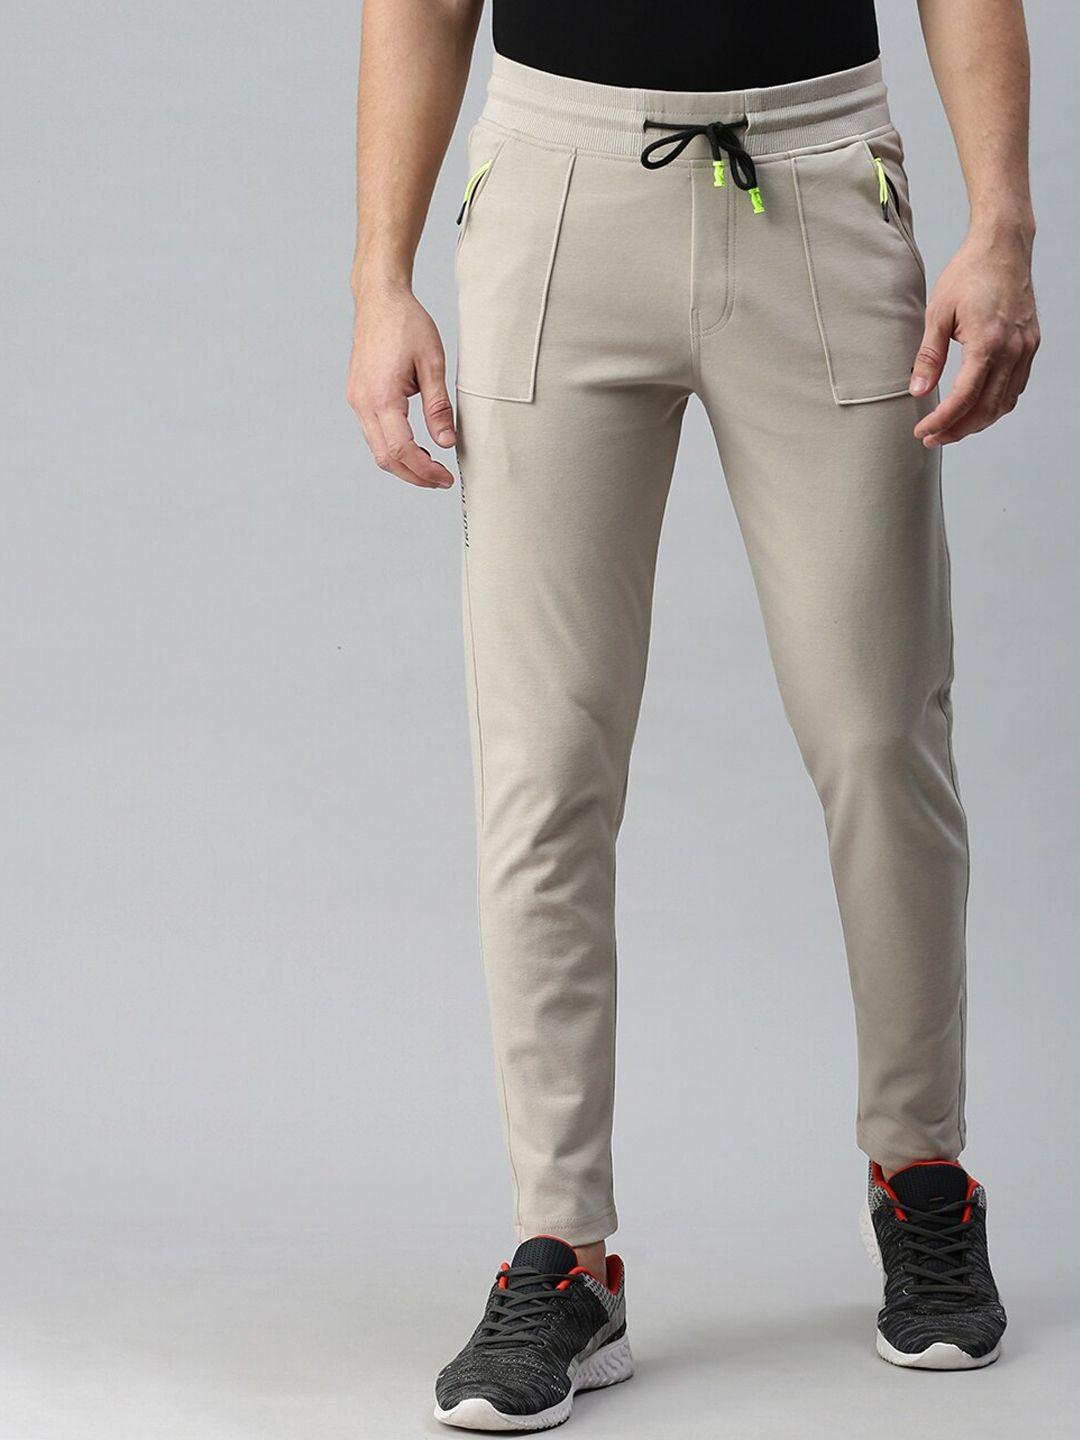 showoff-men-beige-solid-cotton-slim-fit-track-pants